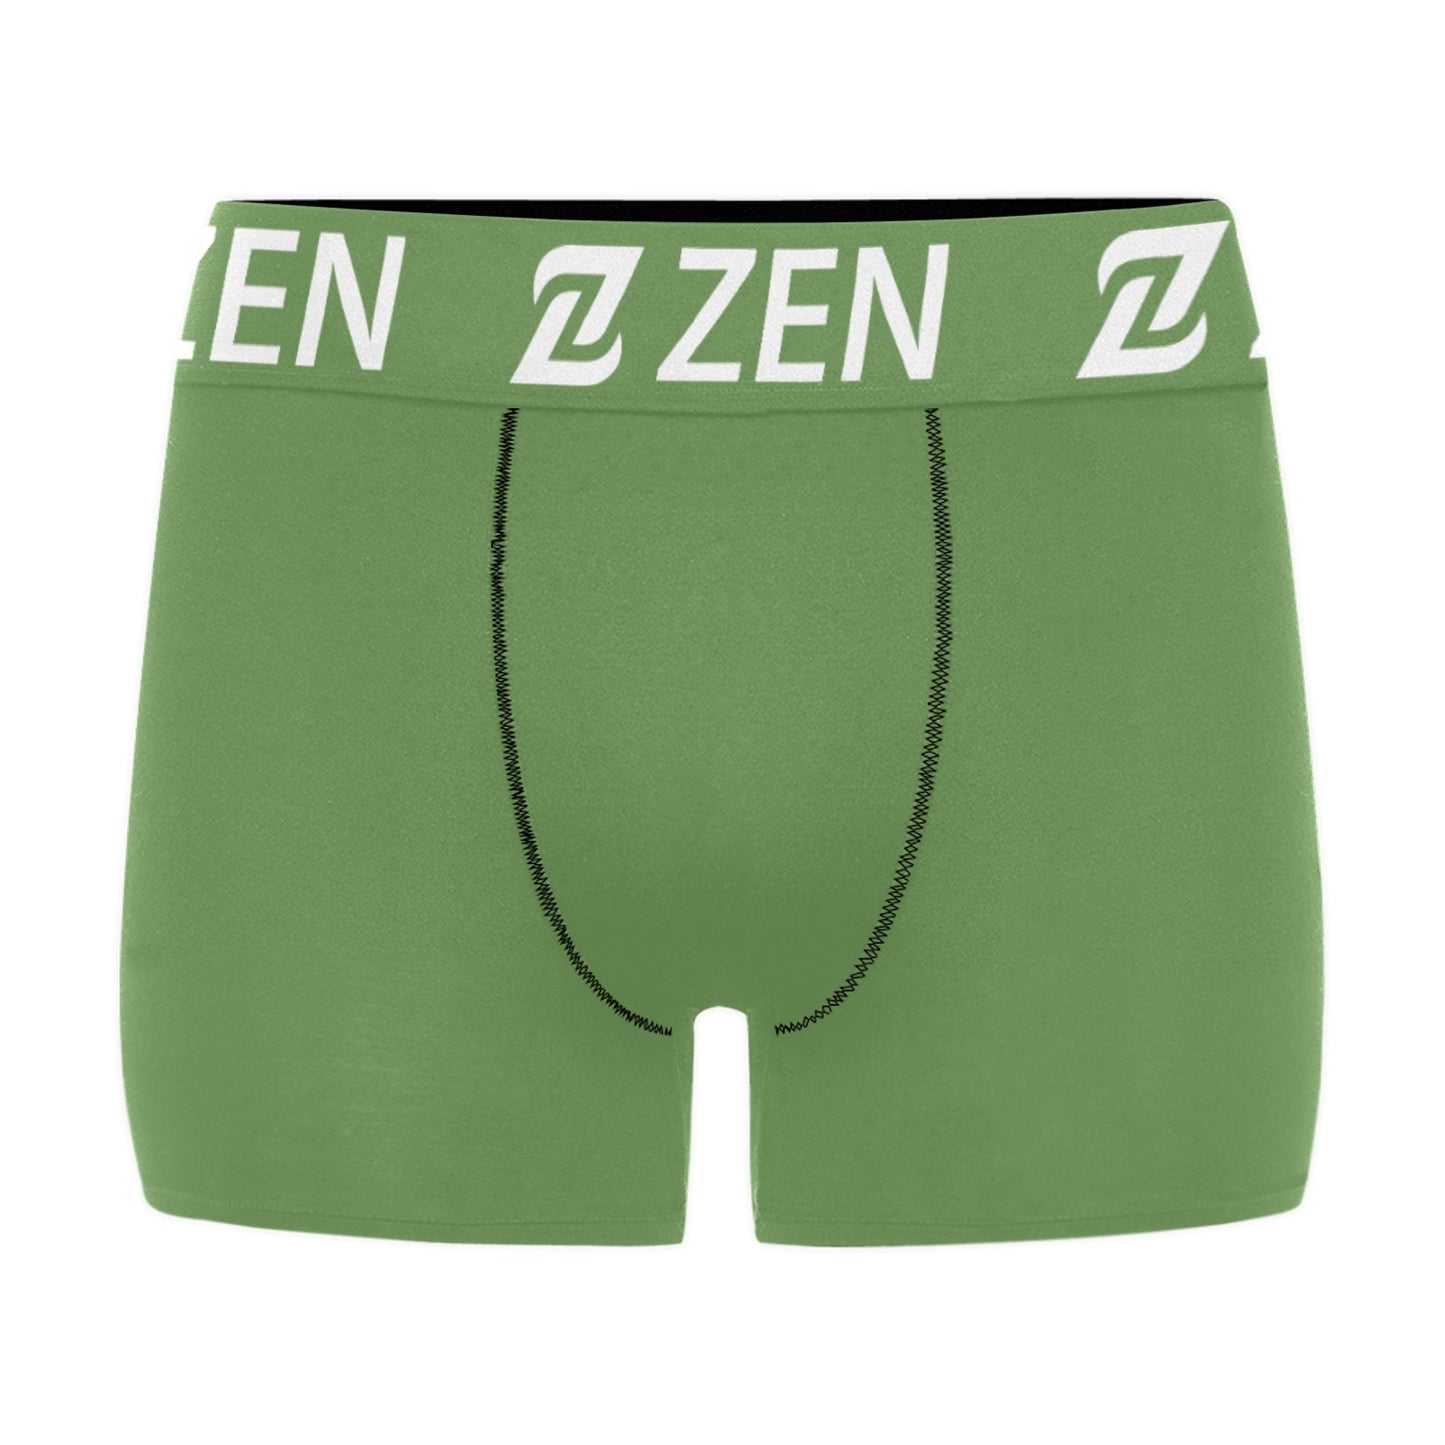 Zen Waistband - Green